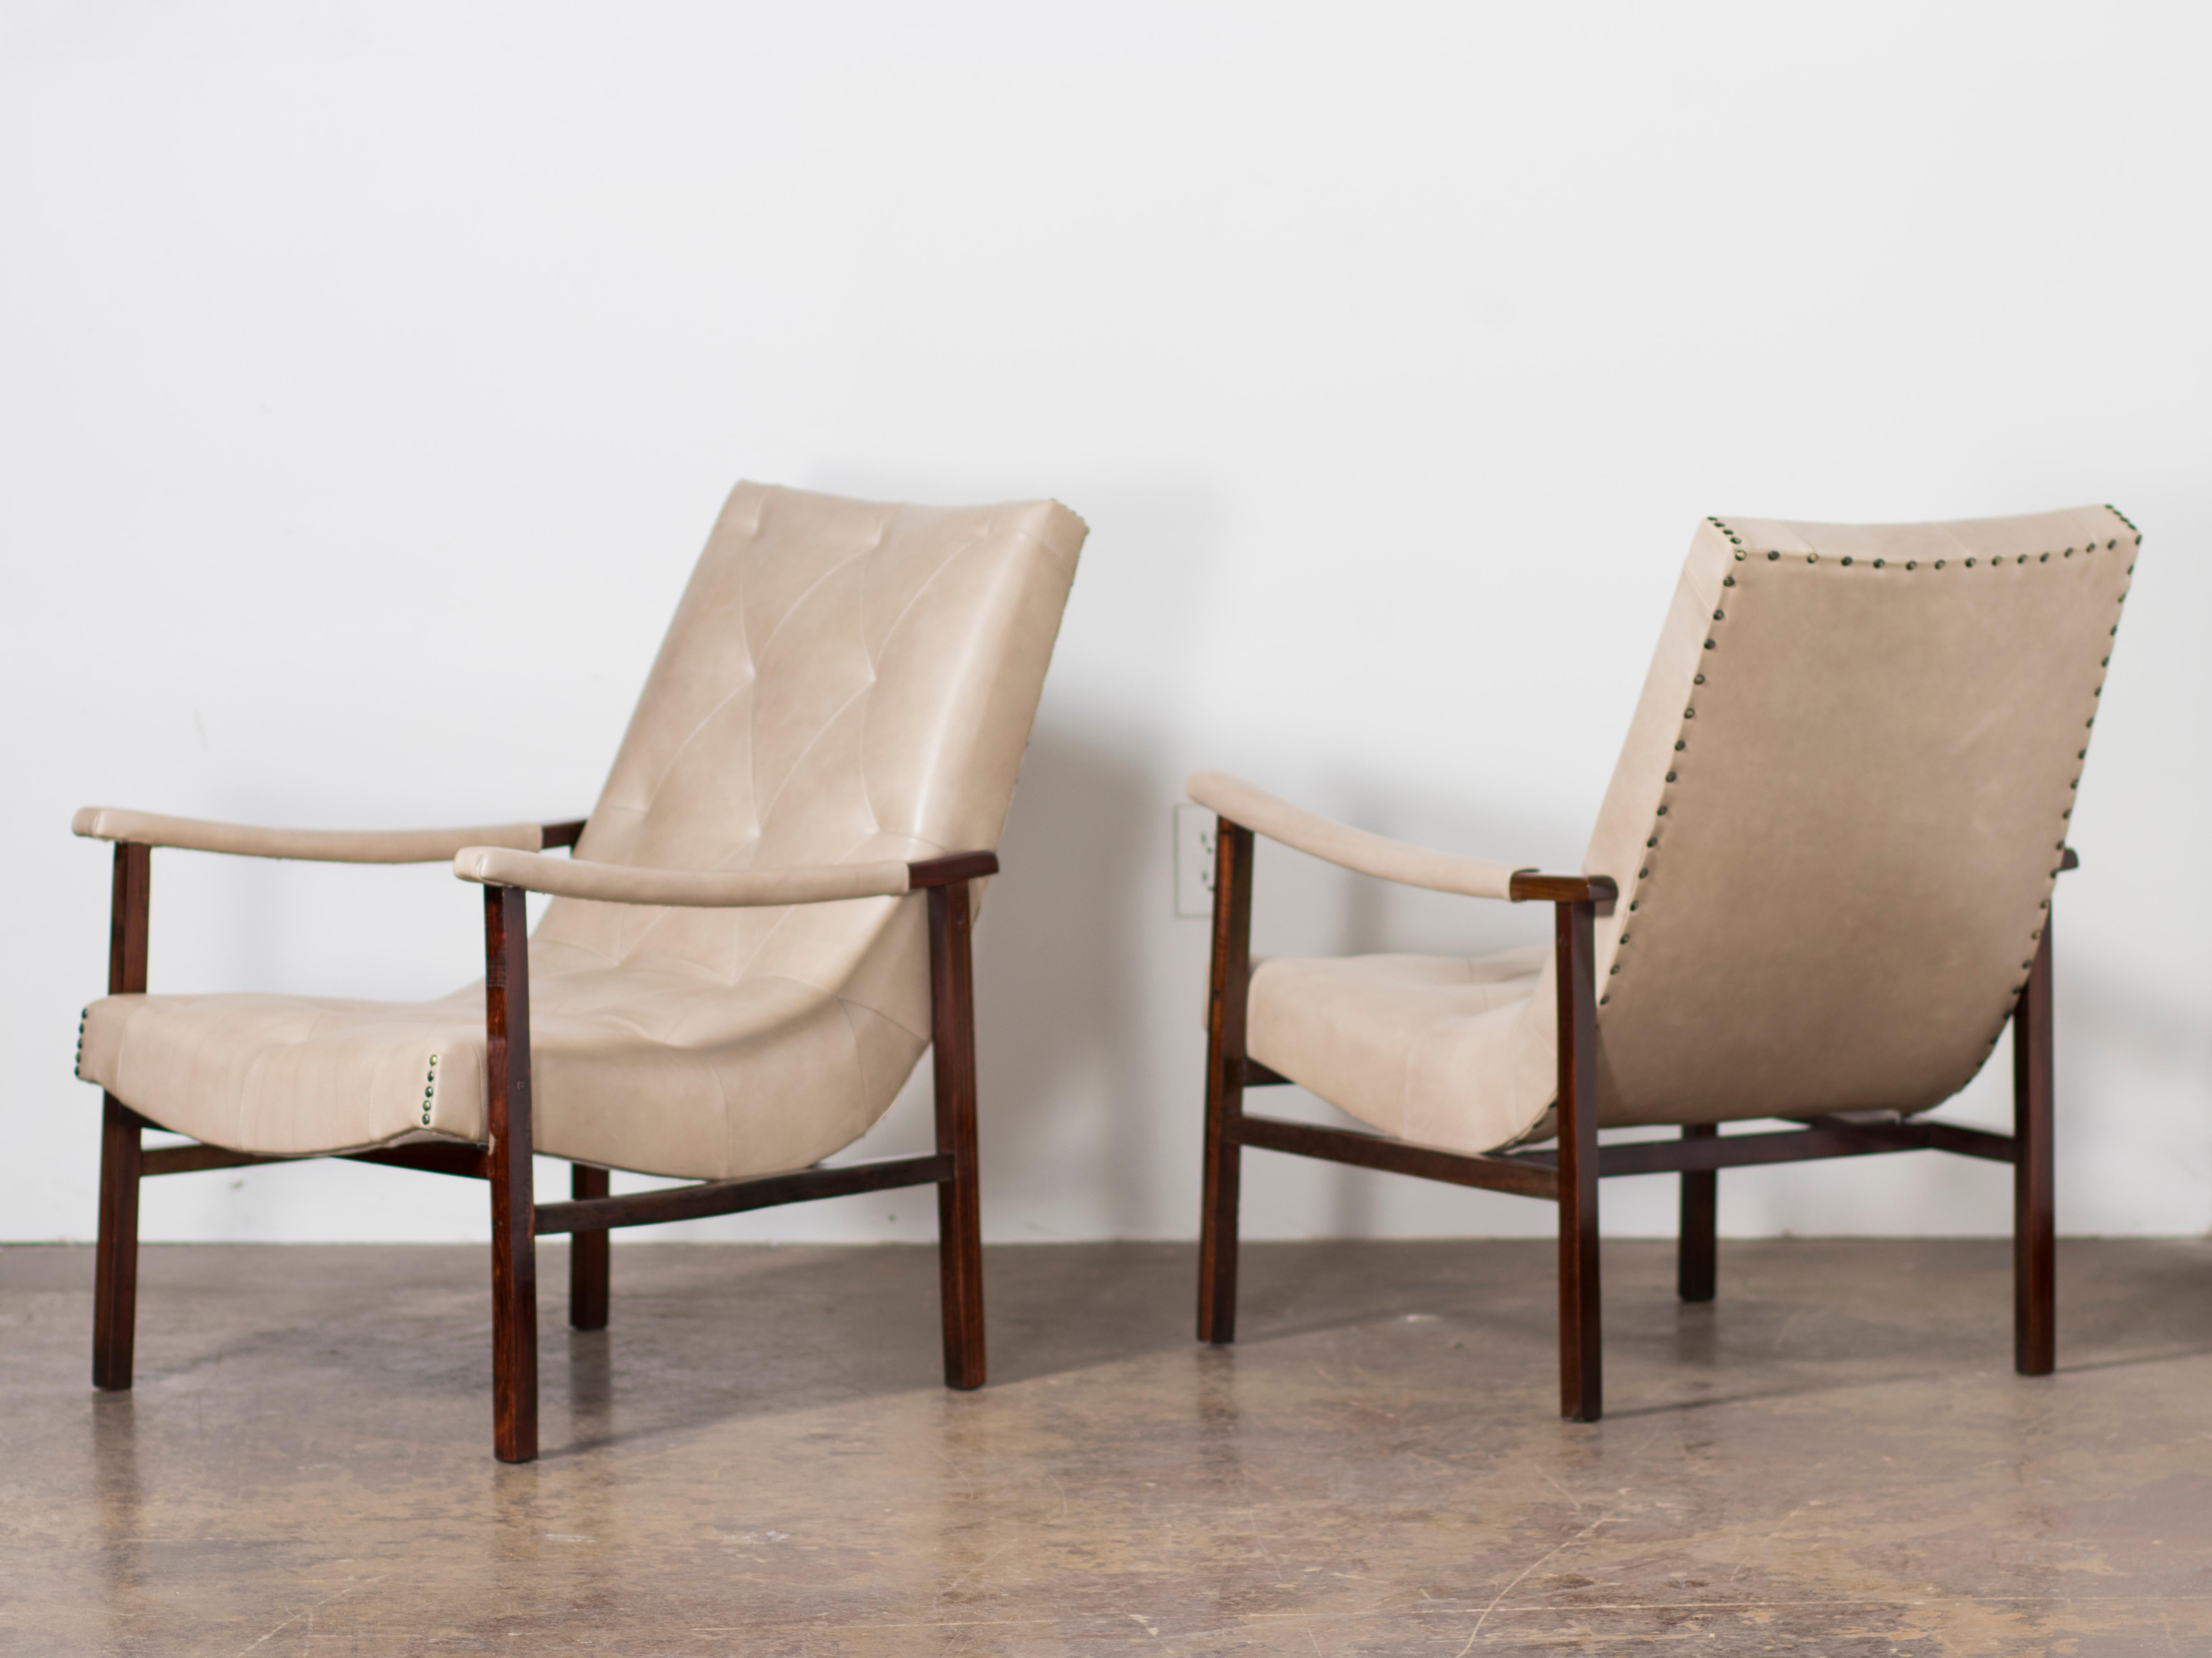 Ein Paar moderne brasilianische Sessel, entworfen von Gelli, aus Palisander und Leder.  Brasilien, etwa in den 1950er Jahren. 

Ein Paar Sessel aus brasilianischem Palisander (Jacaranda), die kürzlich von unseren erfahrenen Handwerkern mit einem